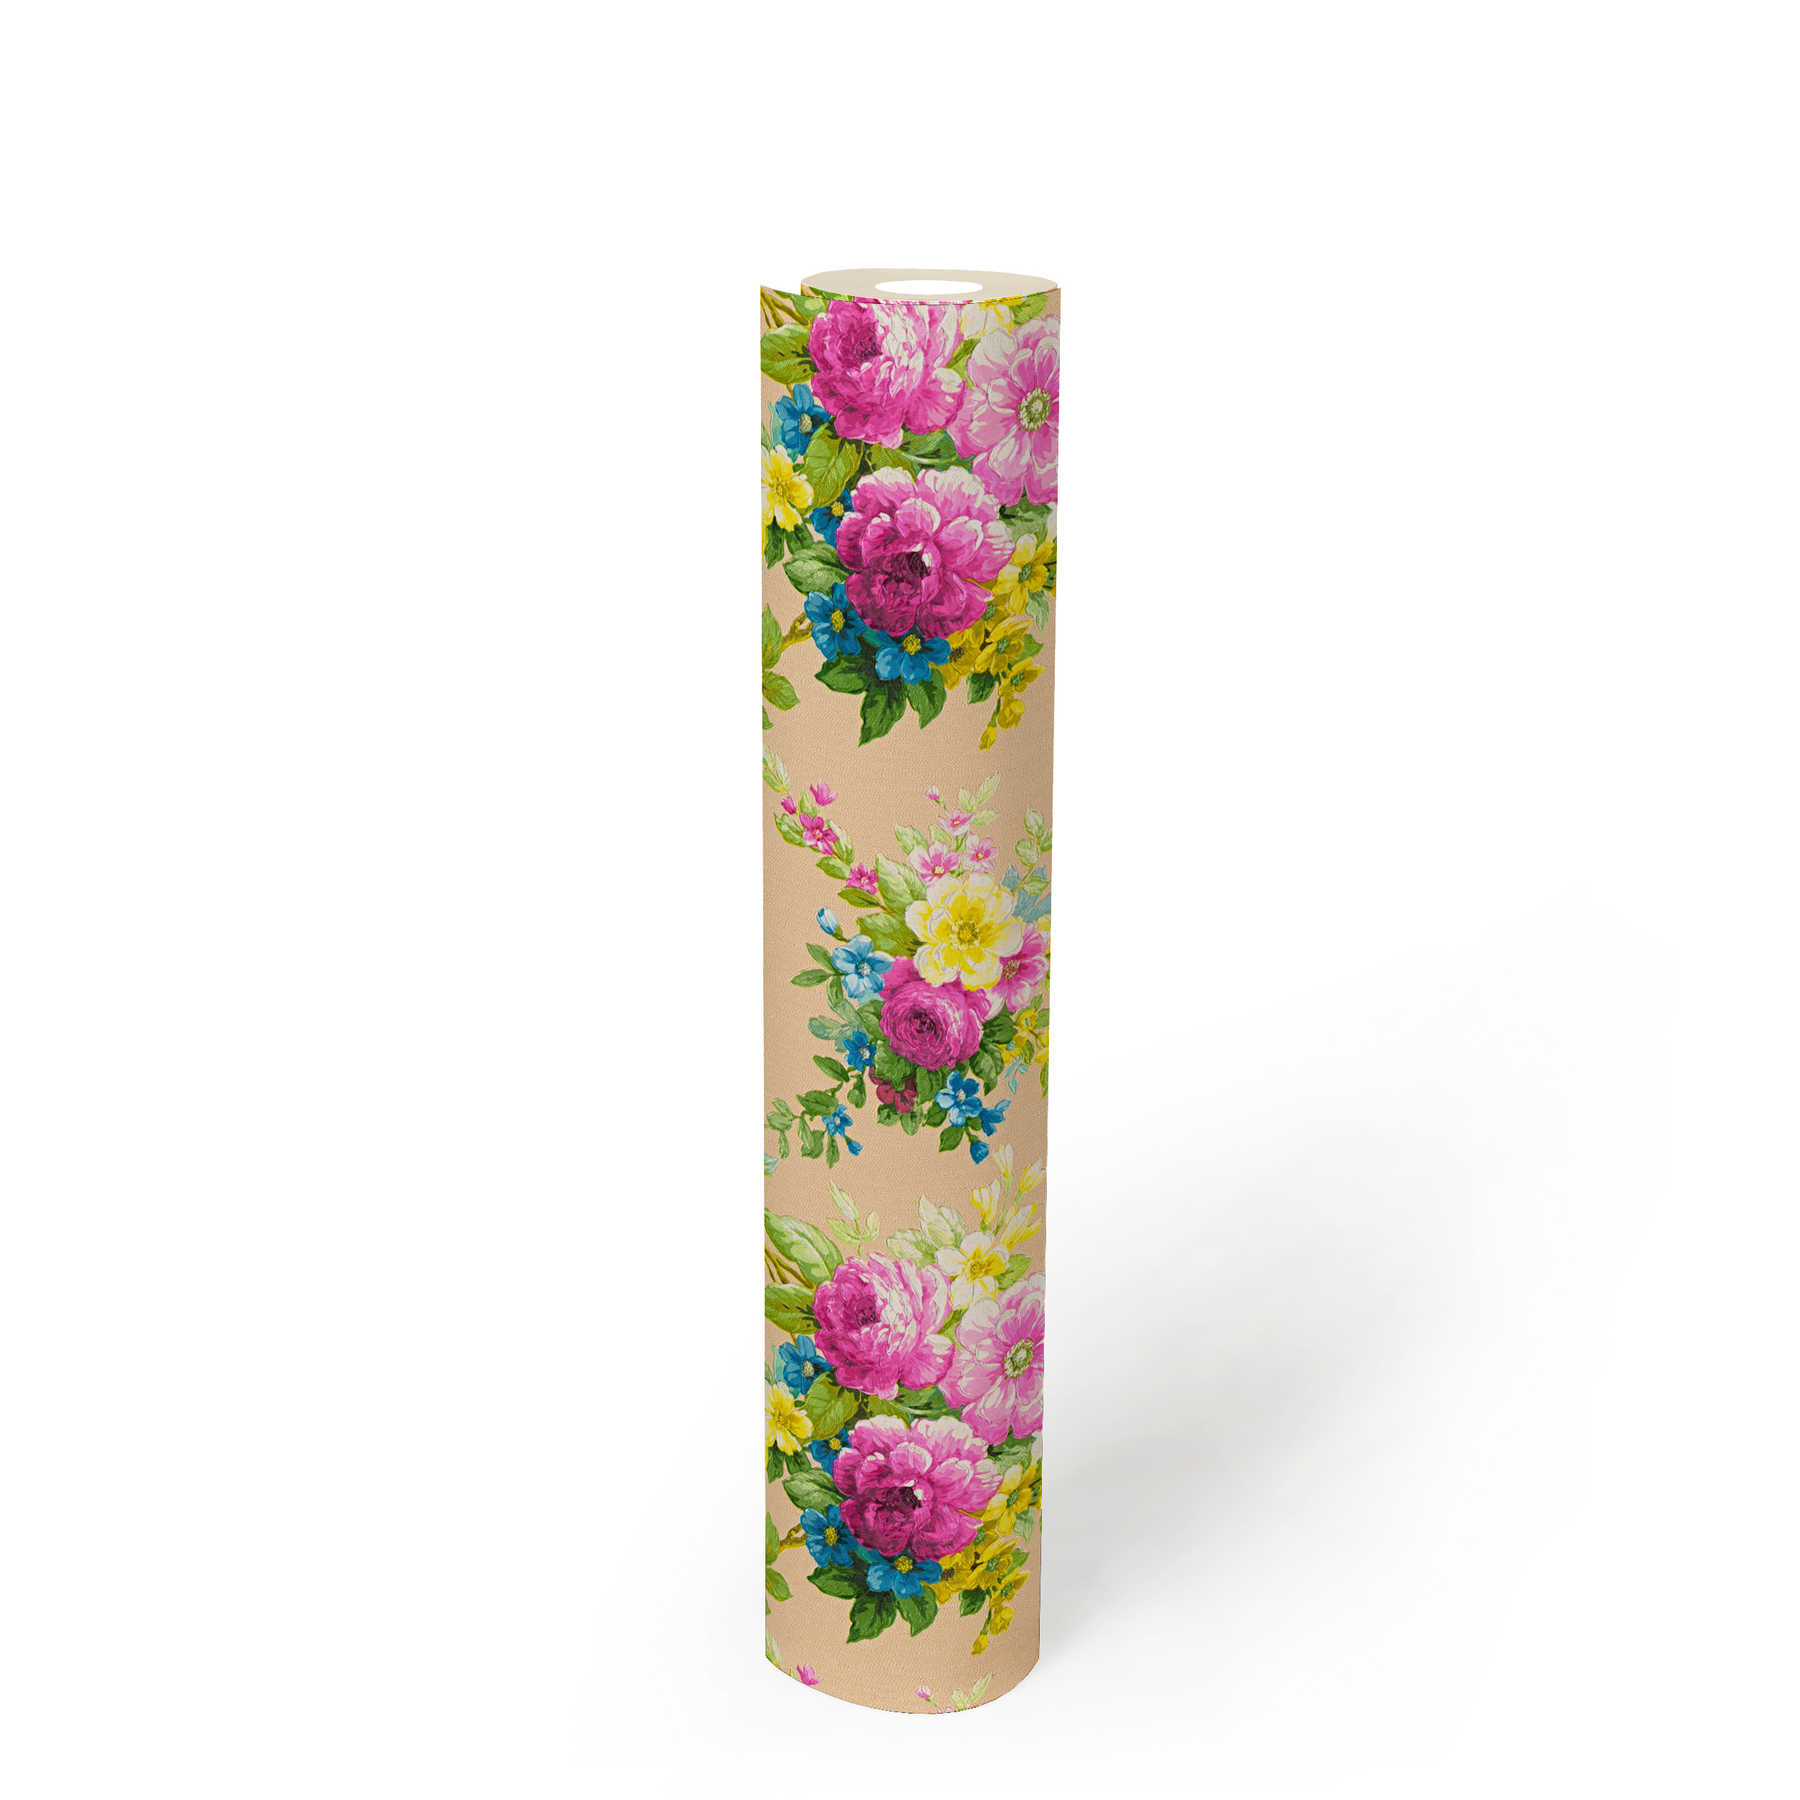             papel pintado flores adorno floral con efecto metálico - multicolor
        